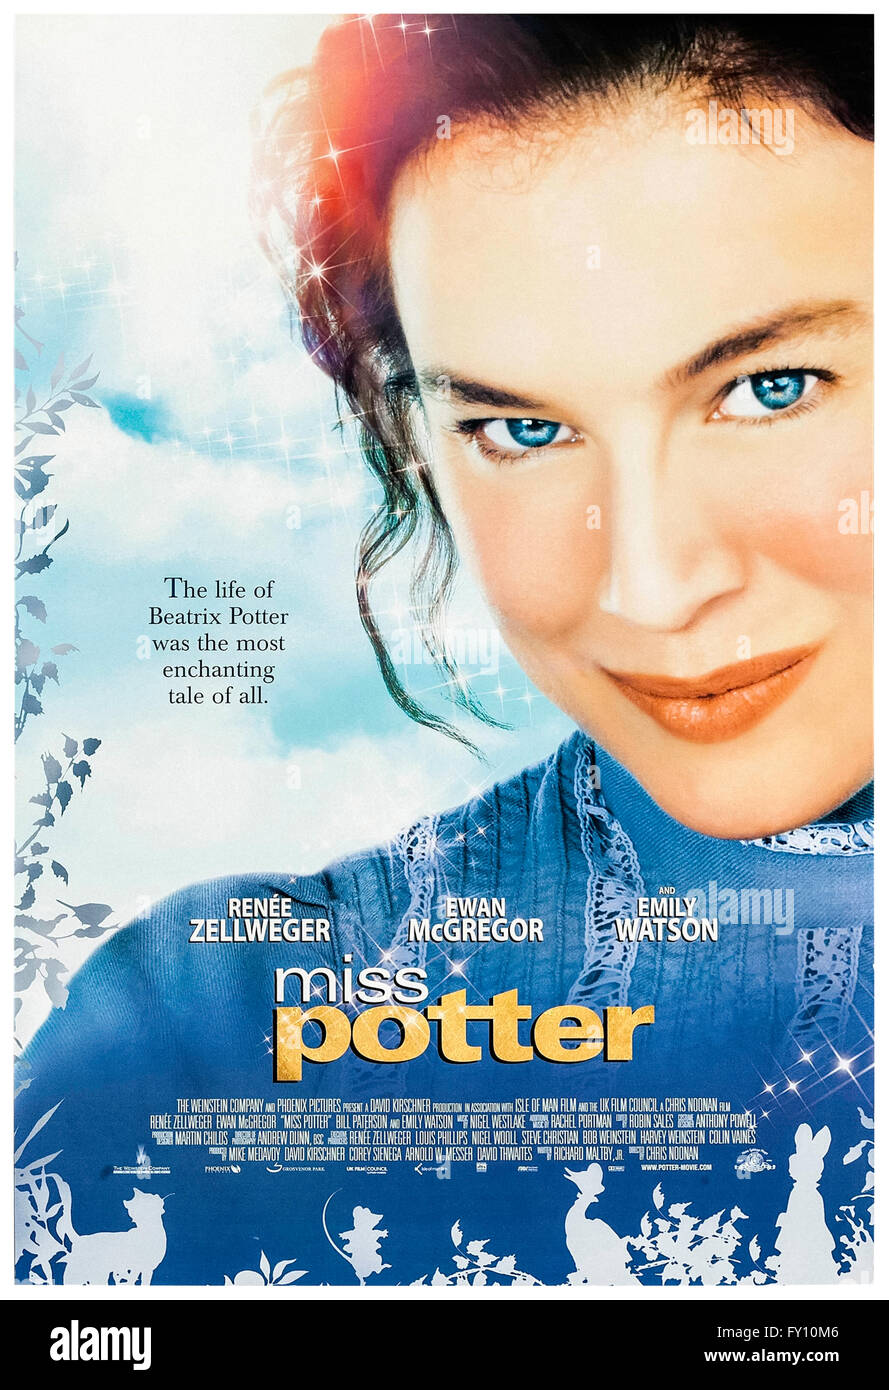 Miss Potter (2006) réalisé par Chris Noonan avec Renée Zellweger, Ewan McGregor et Emily Watson. Biopic sur Beatrix Potter le très apprécié d'Illustrator et auteur de "l'histoire de Peter Rabbit' livre pour enfants. Banque D'Images